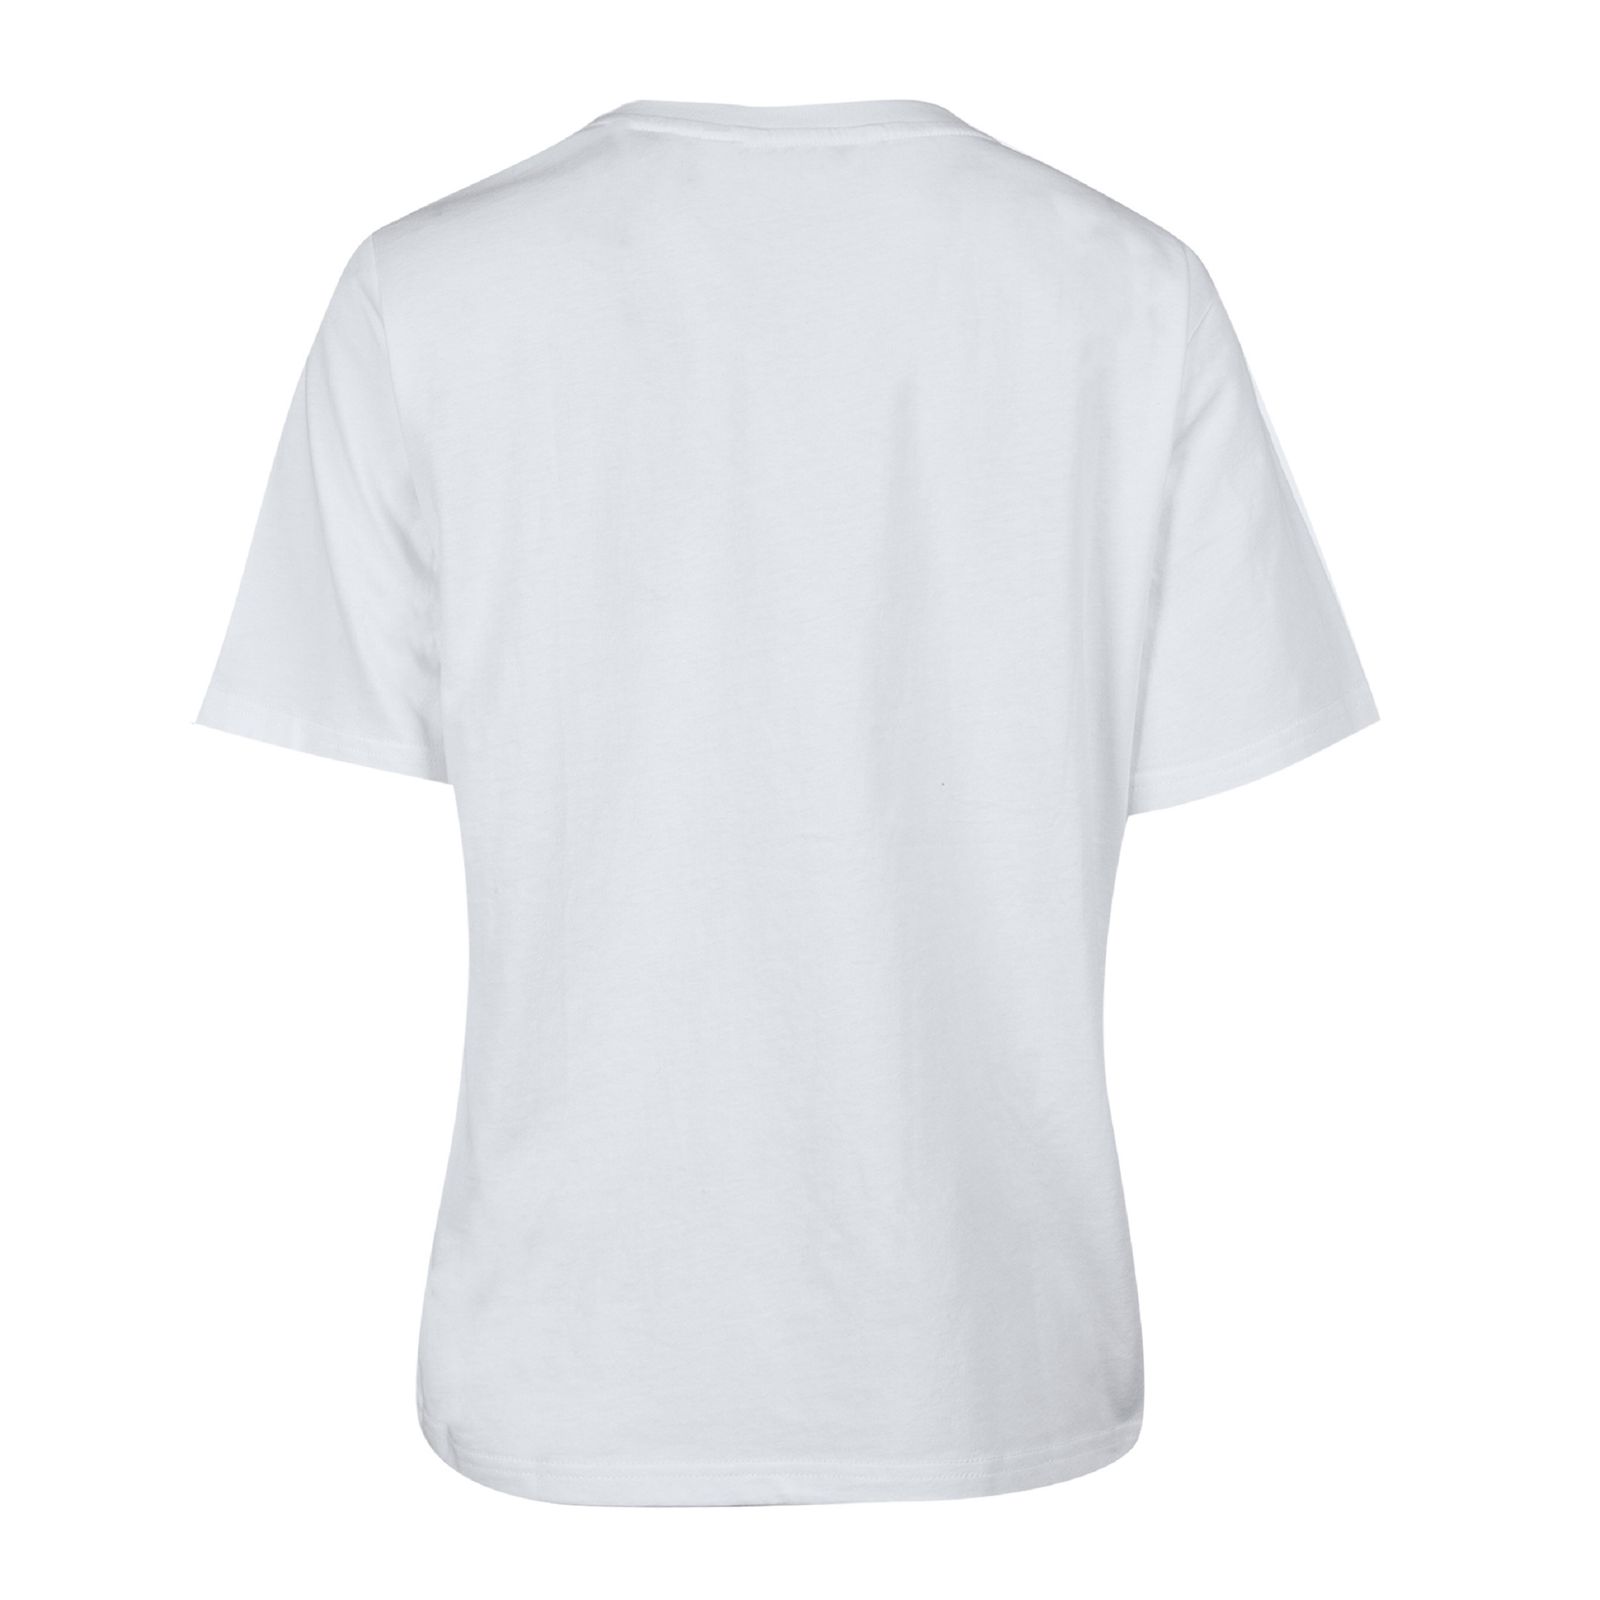 تی شرت آستین کوتاه زنانه جین وست مدل یقه گرد کد 1551181 رنگ سفید -  - 2